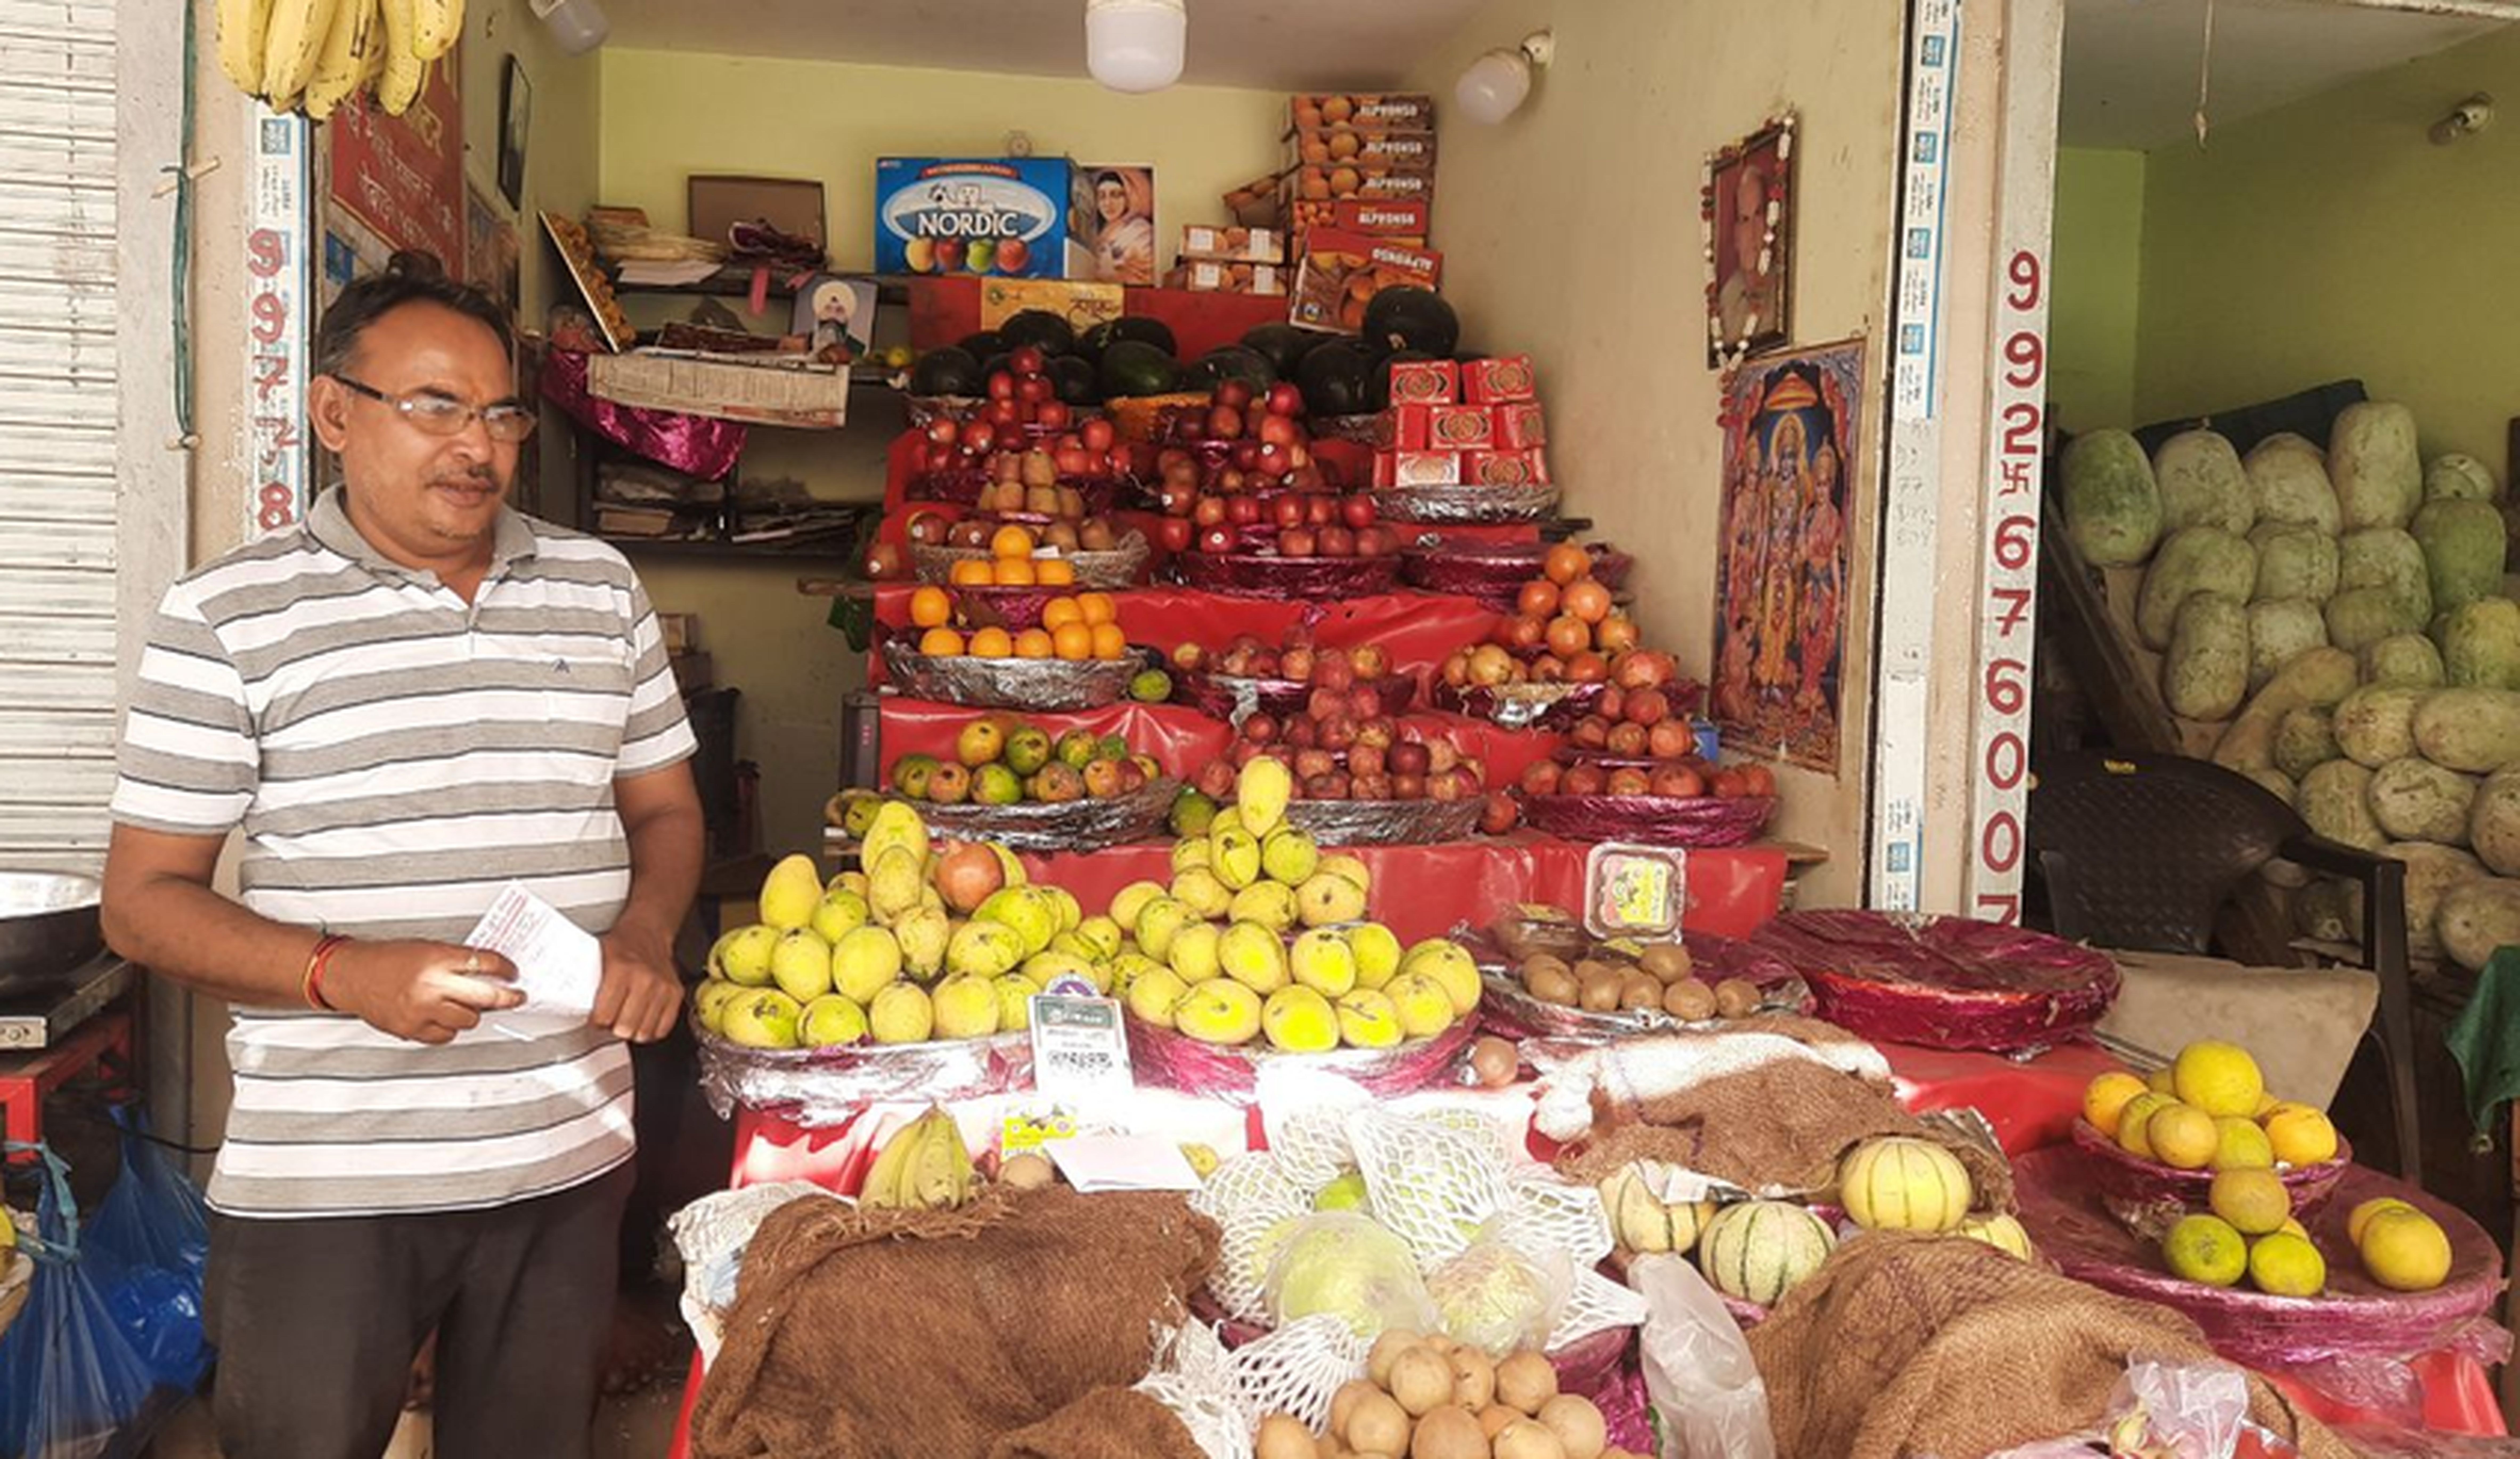 नवरात्र में फलों का स्वाद महंगा, दोगुना देने पड़ रहे है दाम